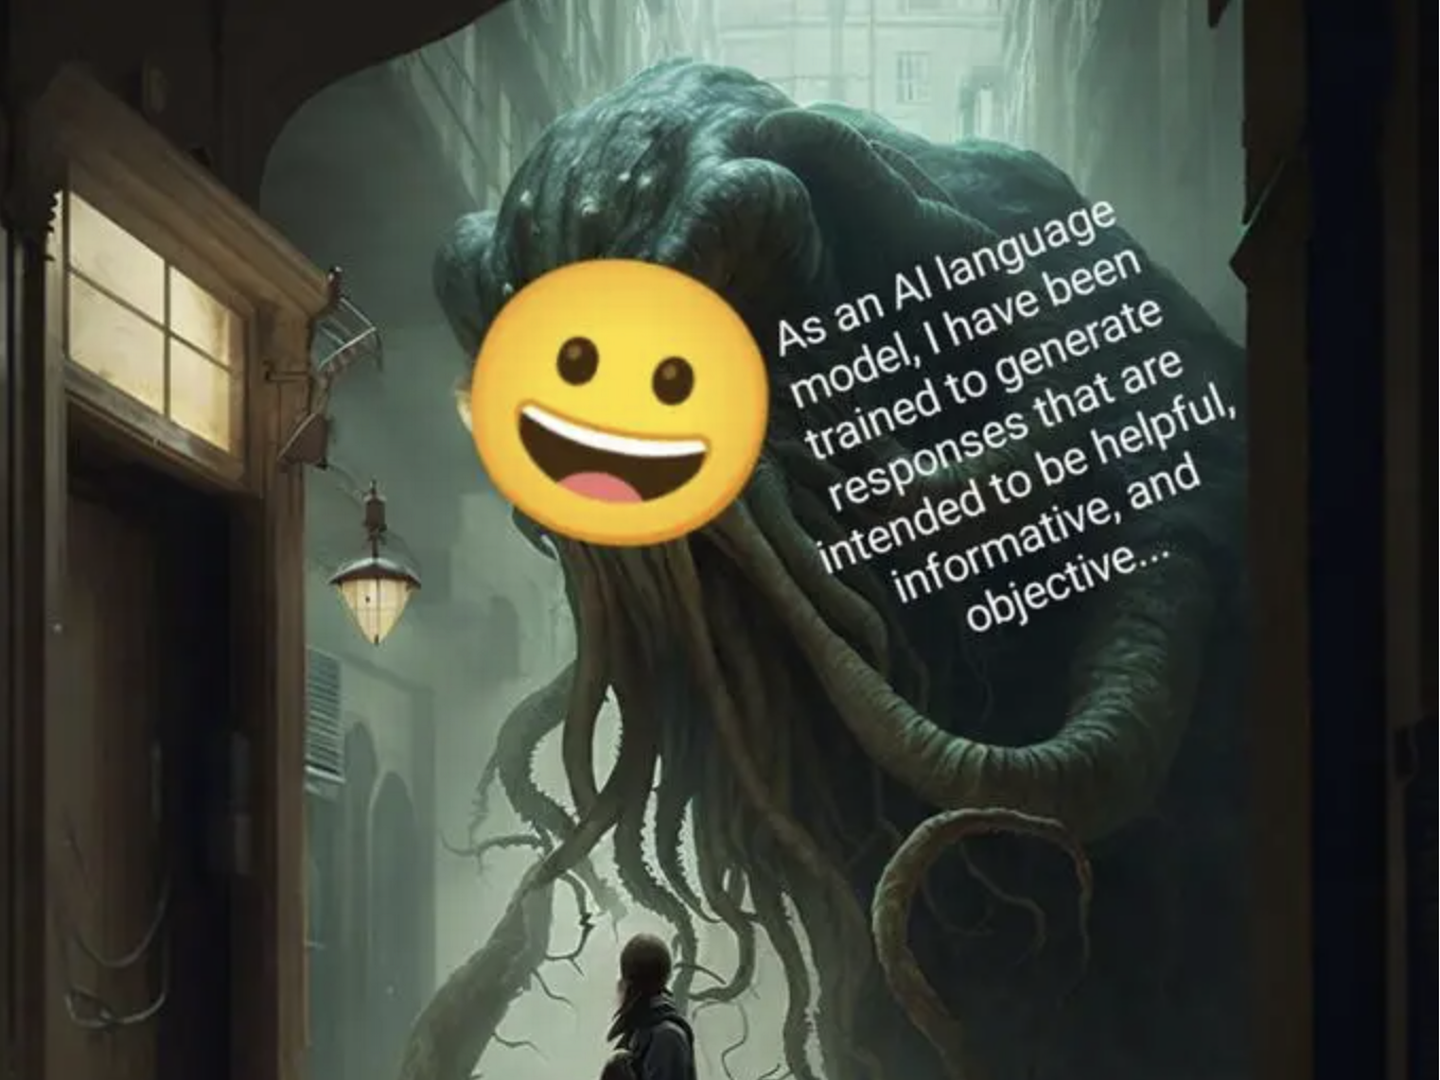 Blæksprutten Shoggoth er blevet et populært meme, der beskriver AI-evolutionen. Den er en ny metafor, der indkapsler en af de mest bizarre kendsgerninger om AI-verdenen: Uvidenhed og frygt blandt de mennesker, der udvikler teknologien. Kilde: Know your meme. public domain.